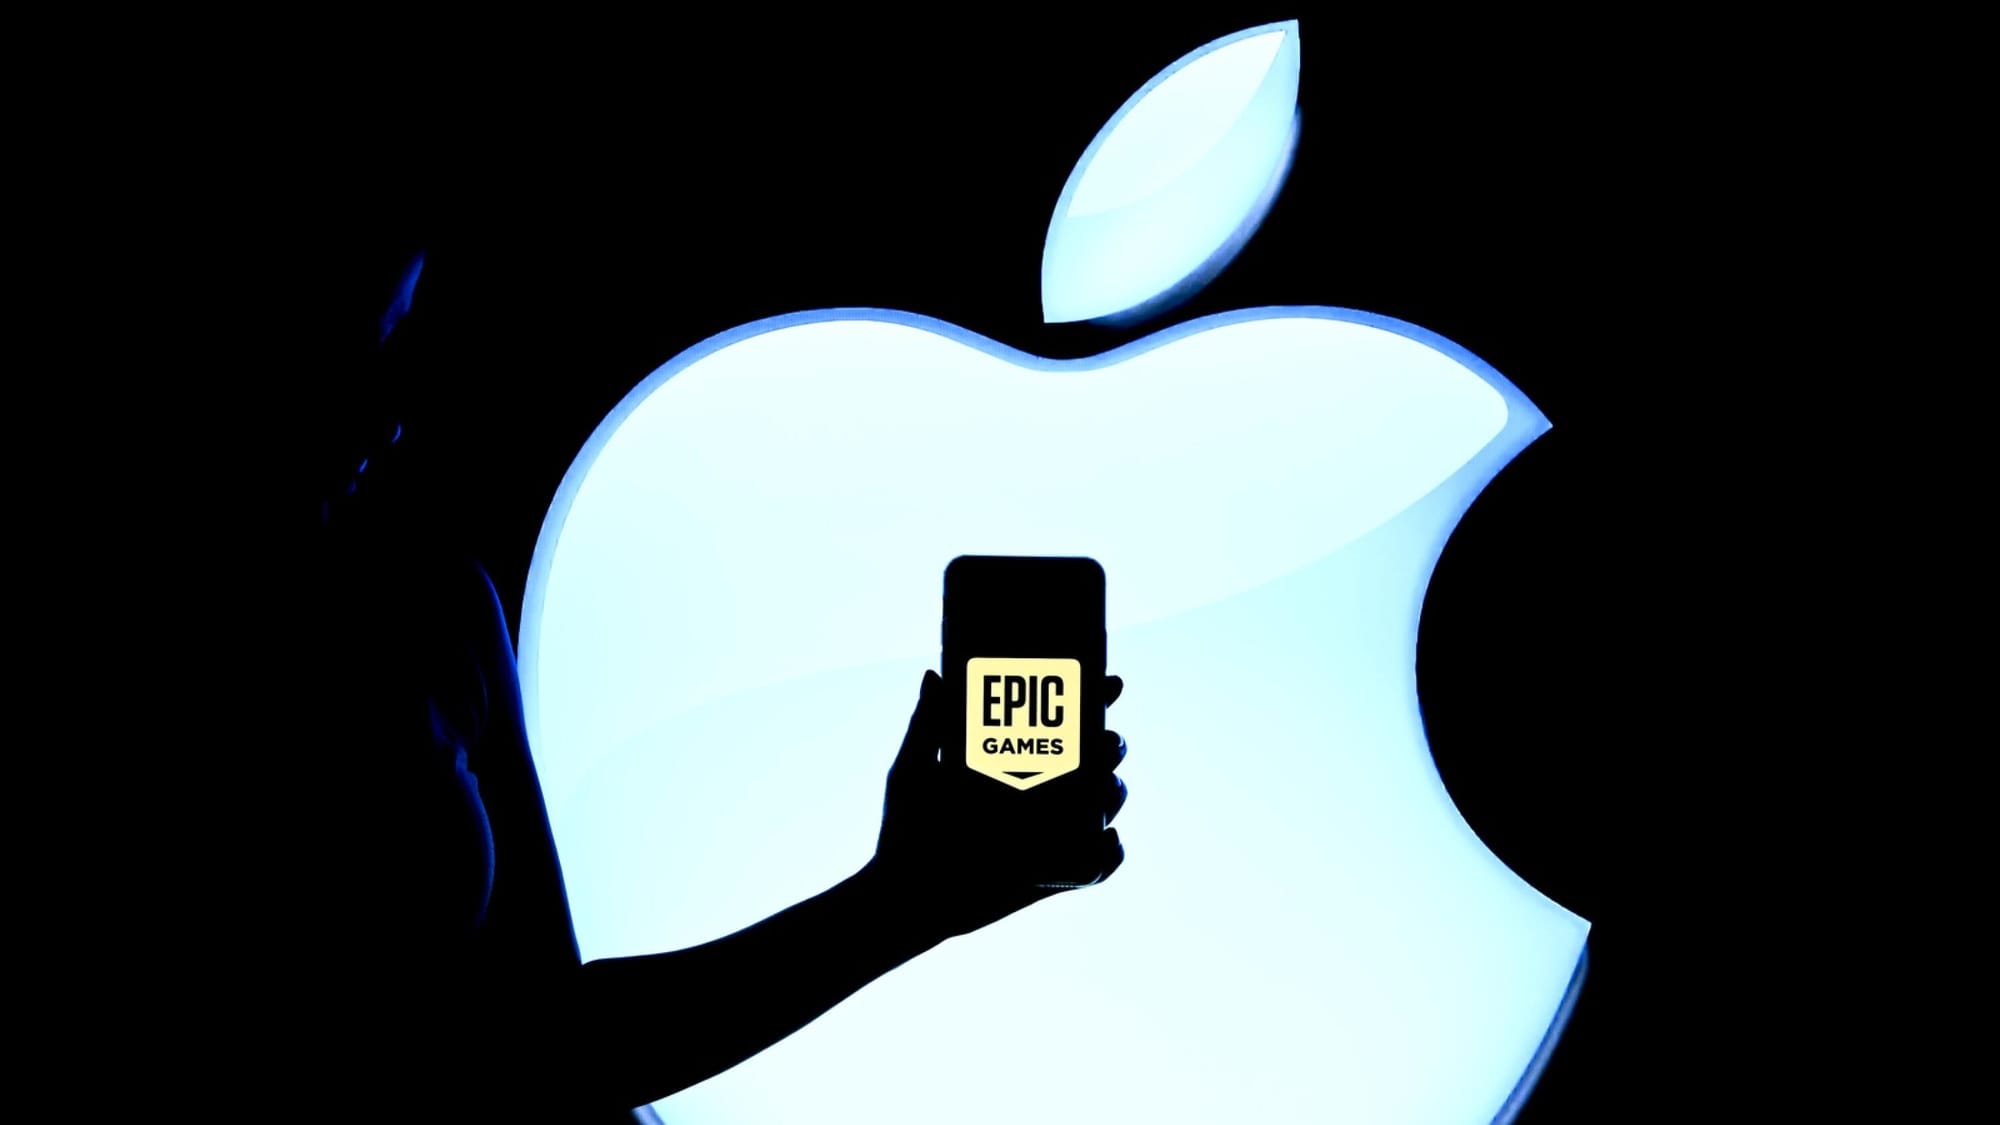 ЕС проведёт проверку решения Apple о блокировке аккаунта Epic Games